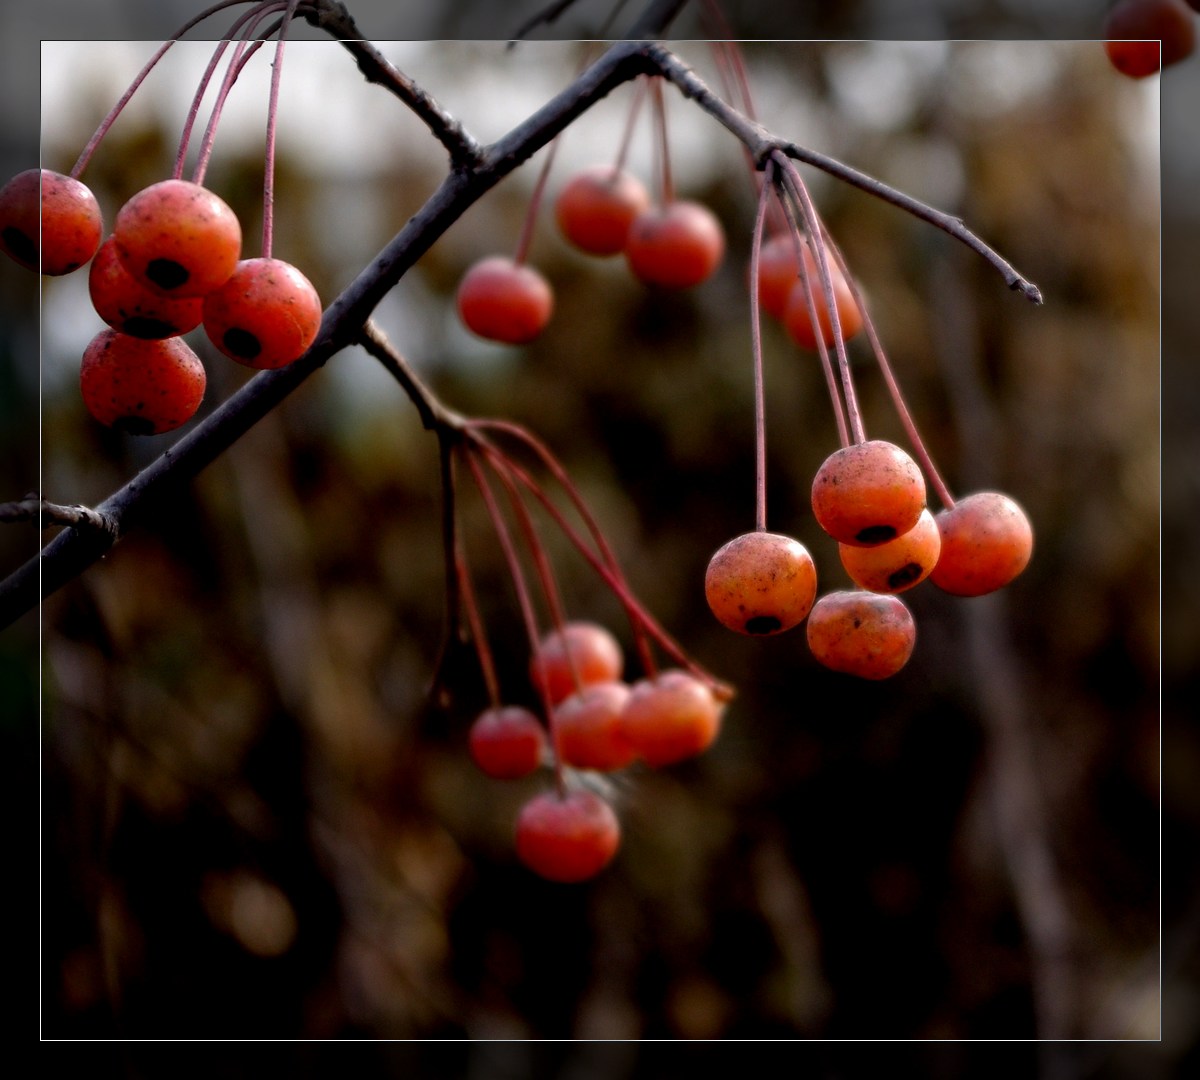 【高清图】阳光下的红果子-中关村在线摄影论坛